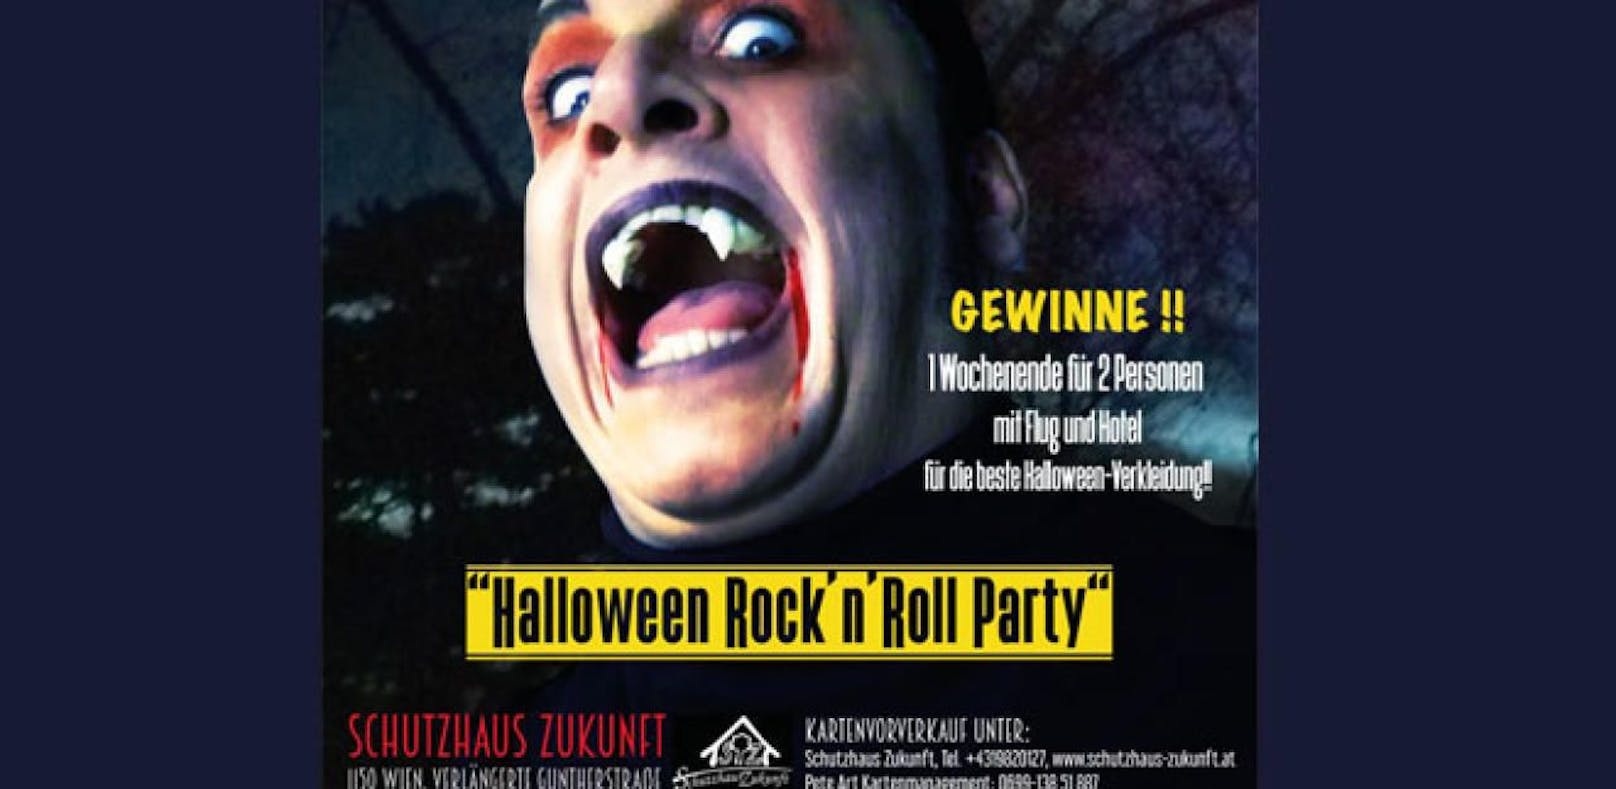 Pete Art and the Rock'n'Roll Junkies sind live auf der Halloween-Party im Schutzhaus Zukunft am 31.10. zu sehen!